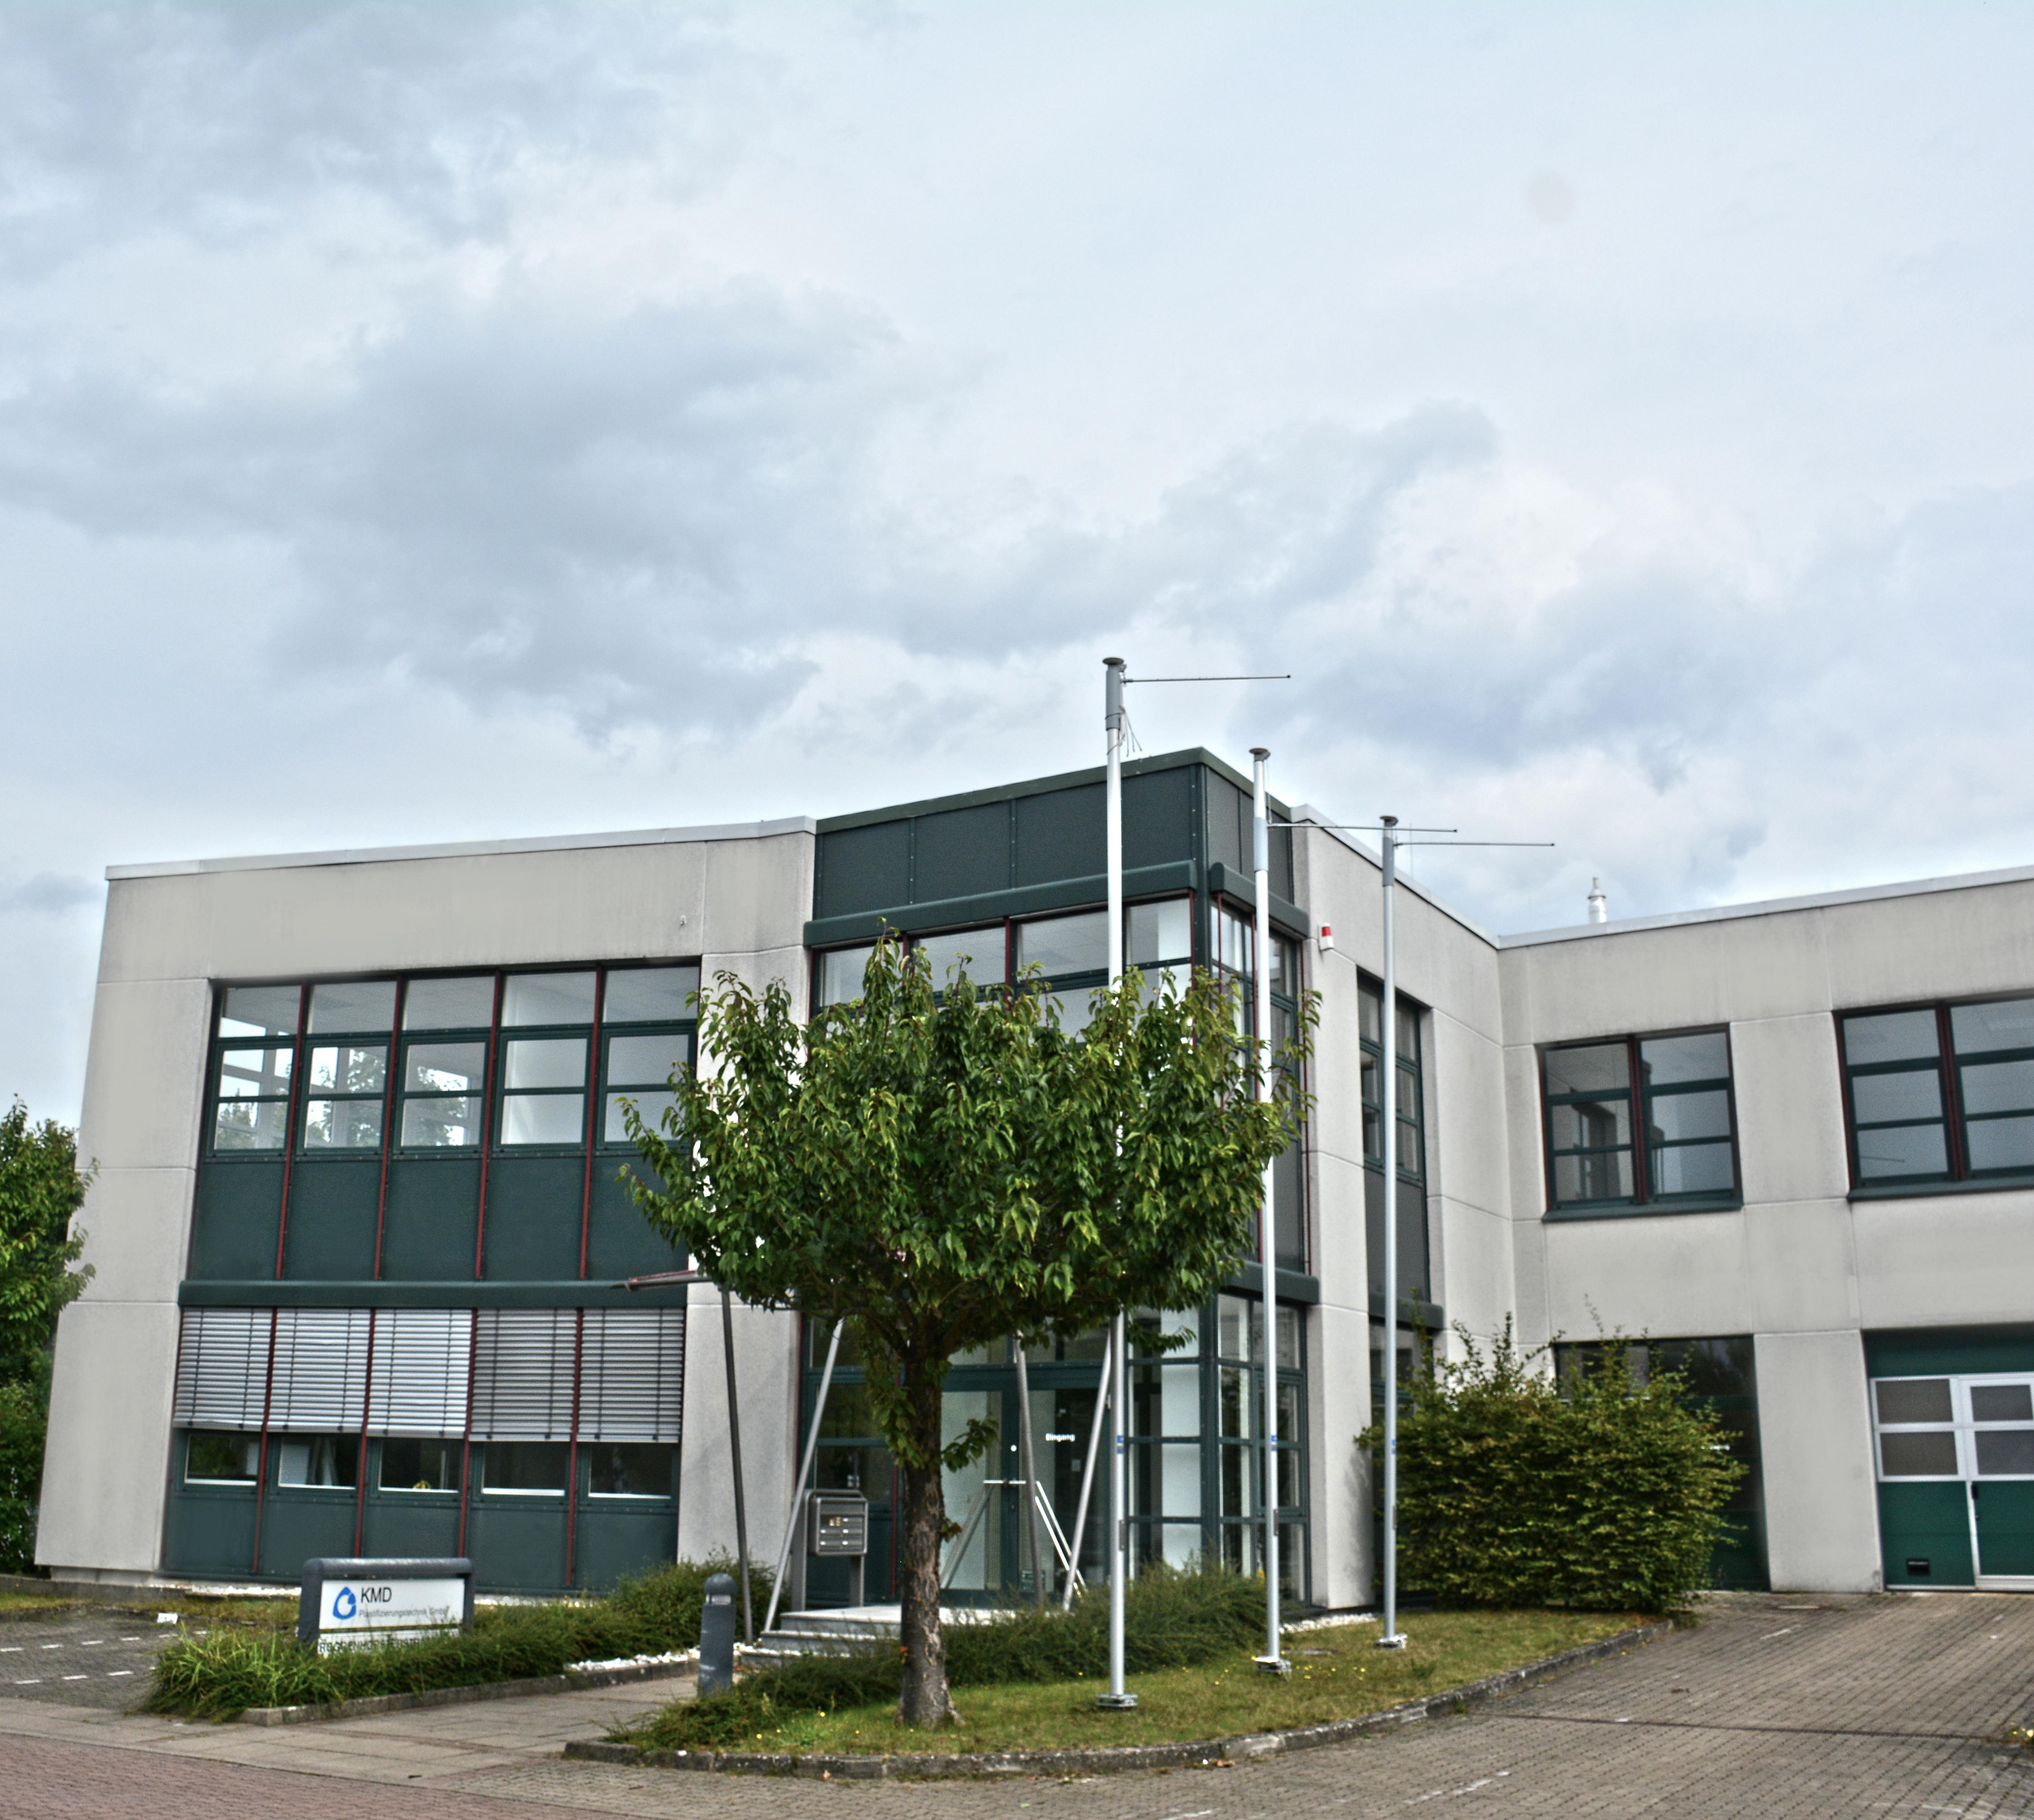 KMD Plastifizierungstechnik GmbH, Roggenhorster Strasse 9a in Lübeck